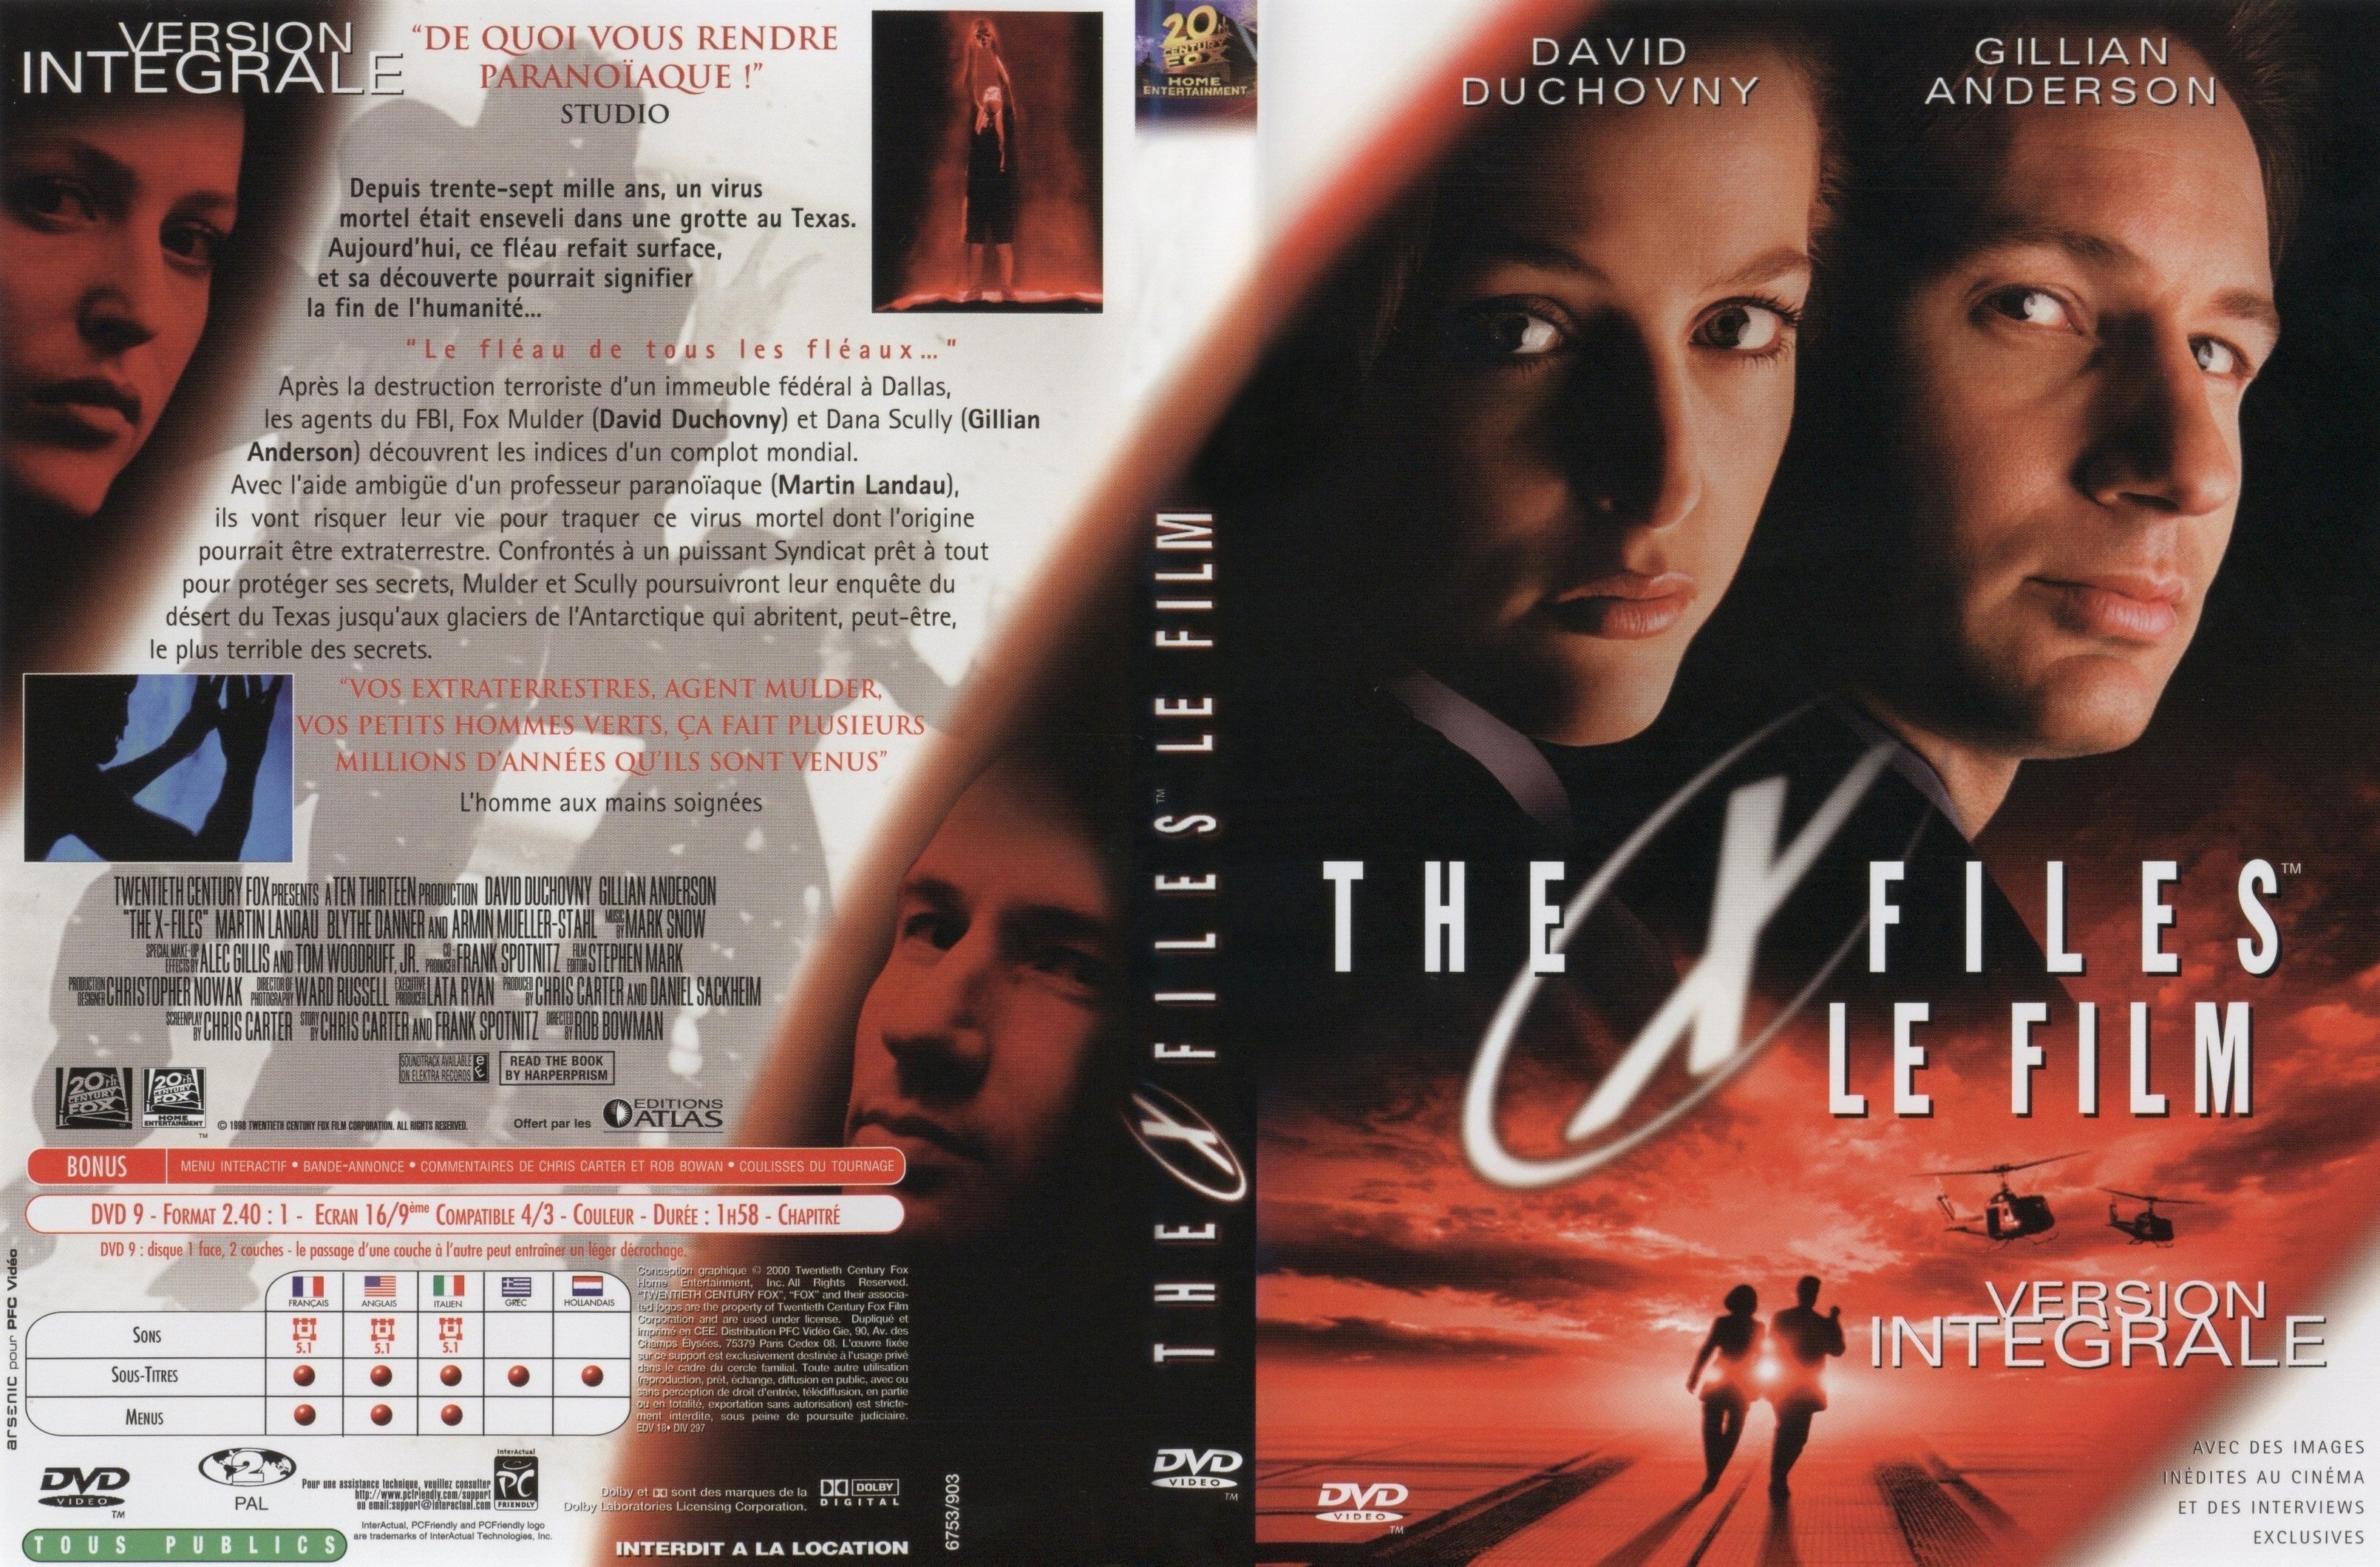 Jaquette DVD de X Files Le film - Cinéma Passion